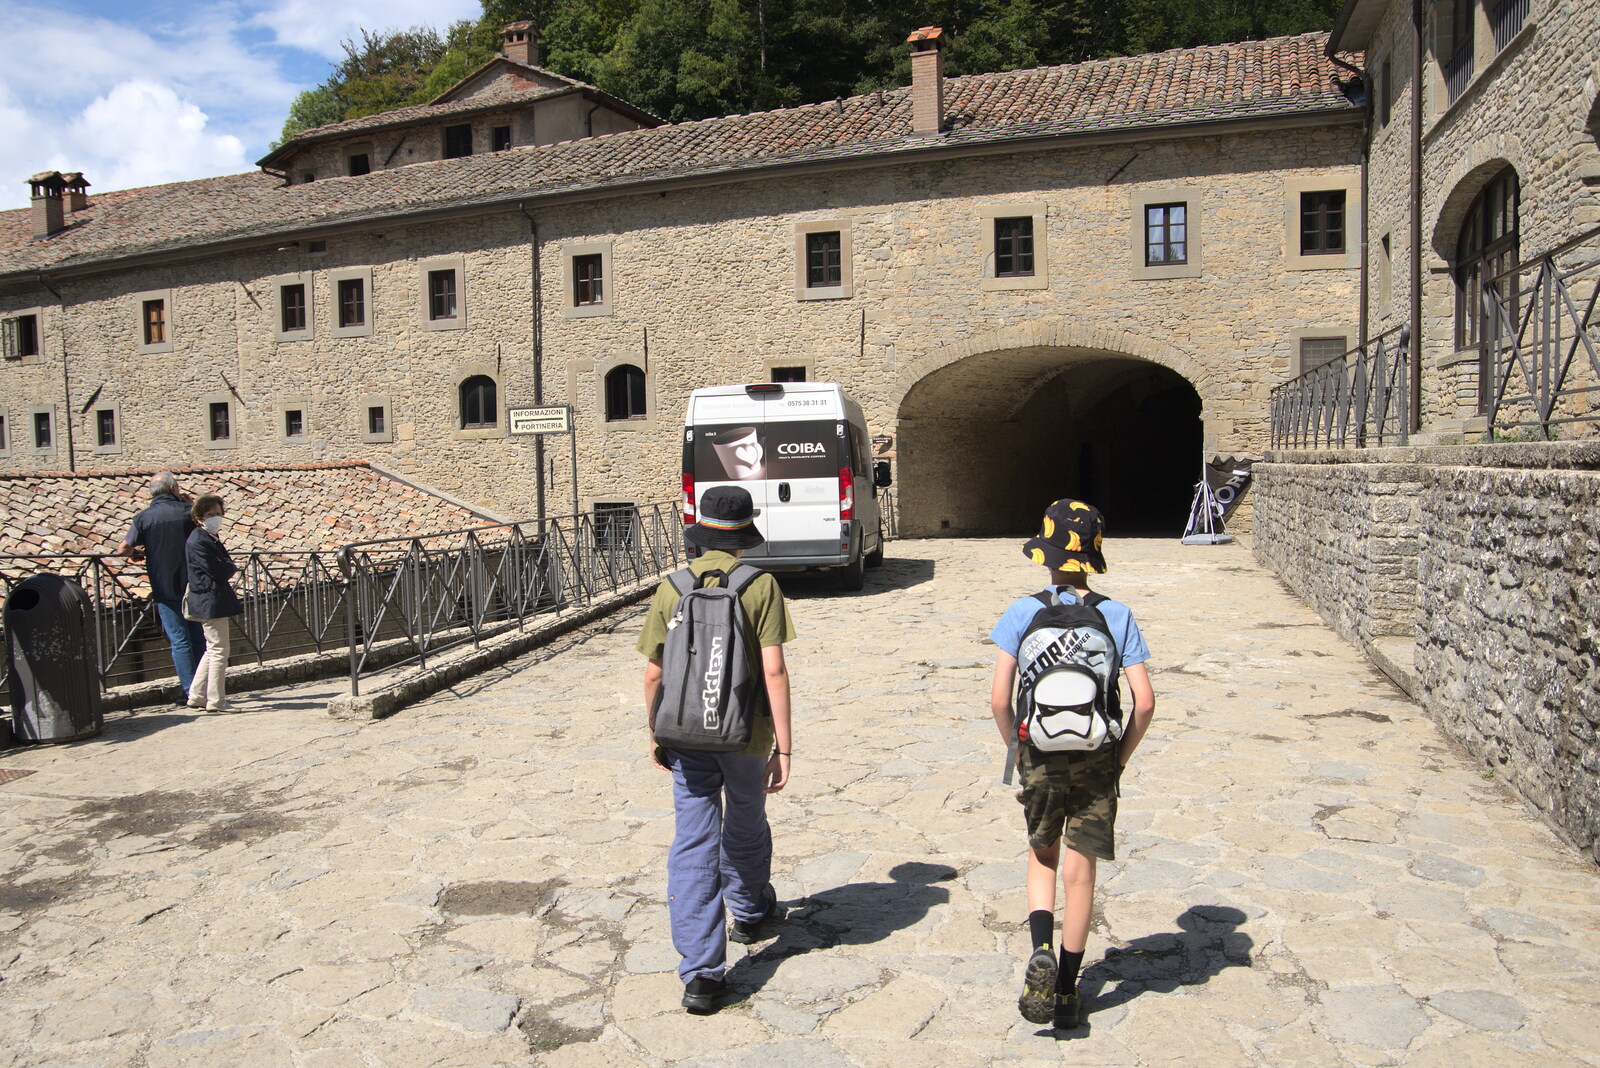 Castiglio Del Lago and Santuario della Verna, Umbria and Tuscany, Italy - 1st September 2022: The boys head into the monastery at La Verna